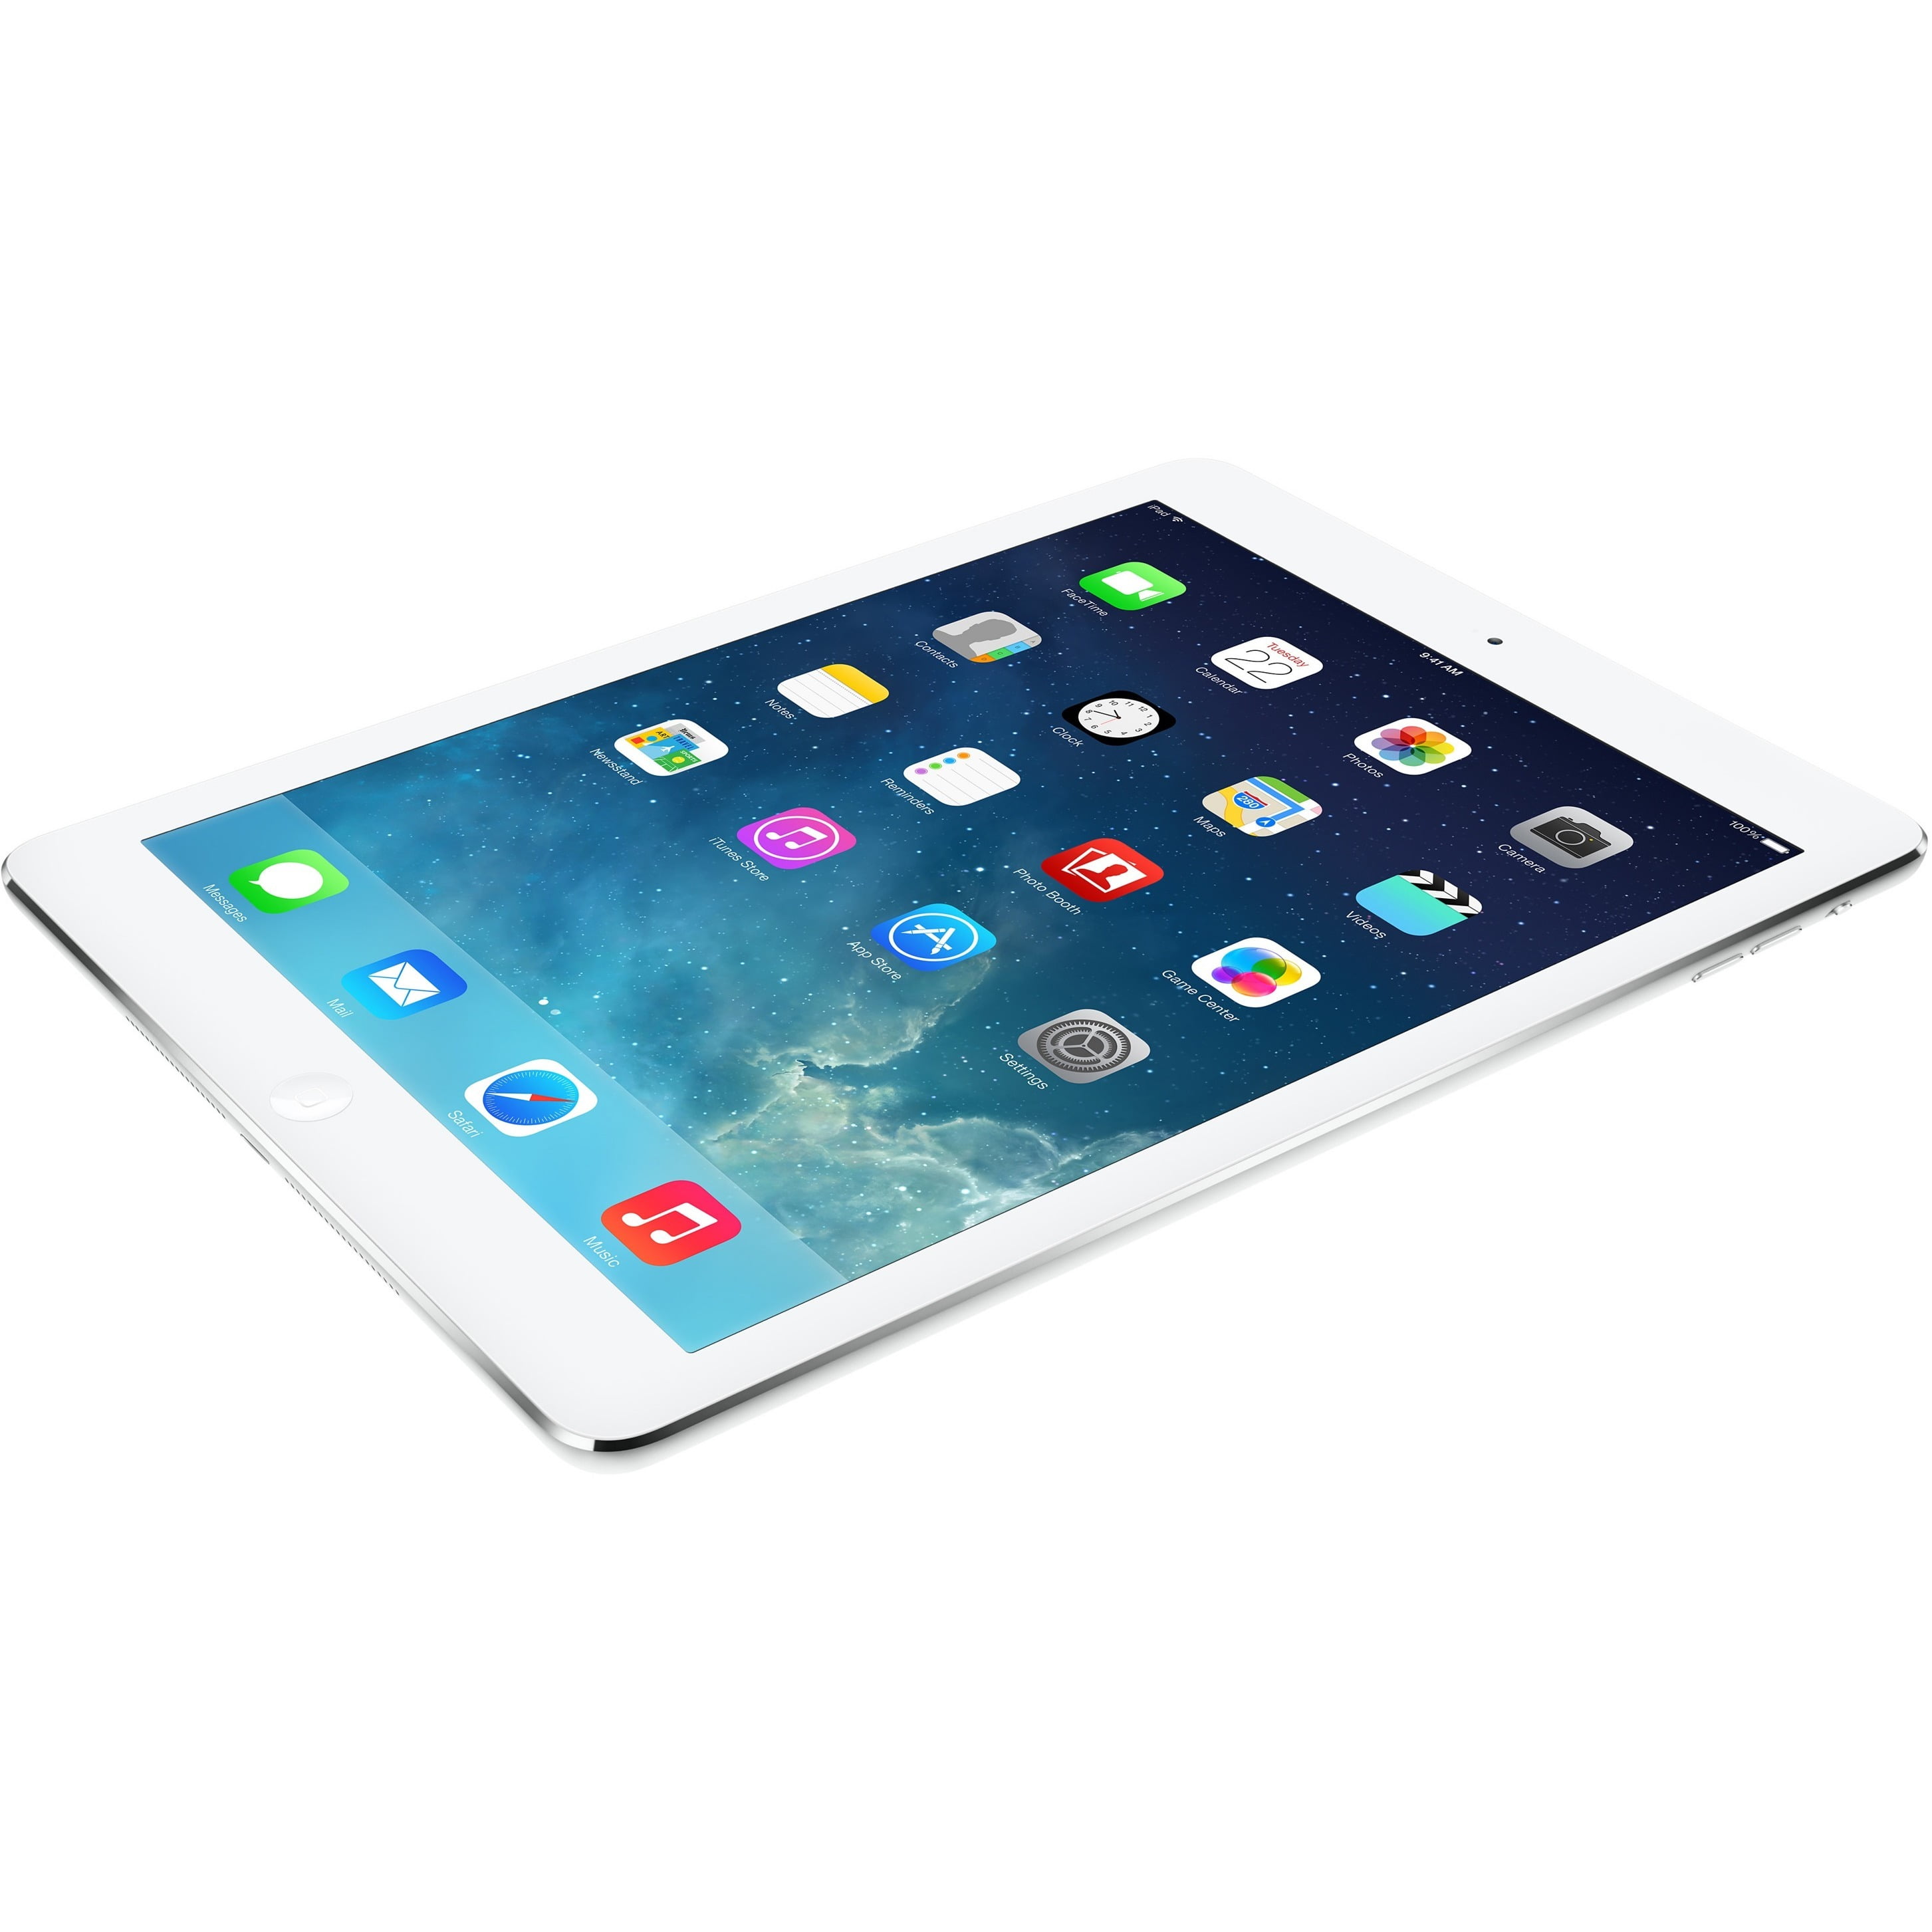 iPad Air 6 cũ: Đánh giá, thông số kỹ thuật và giá bán tốt nhất 2